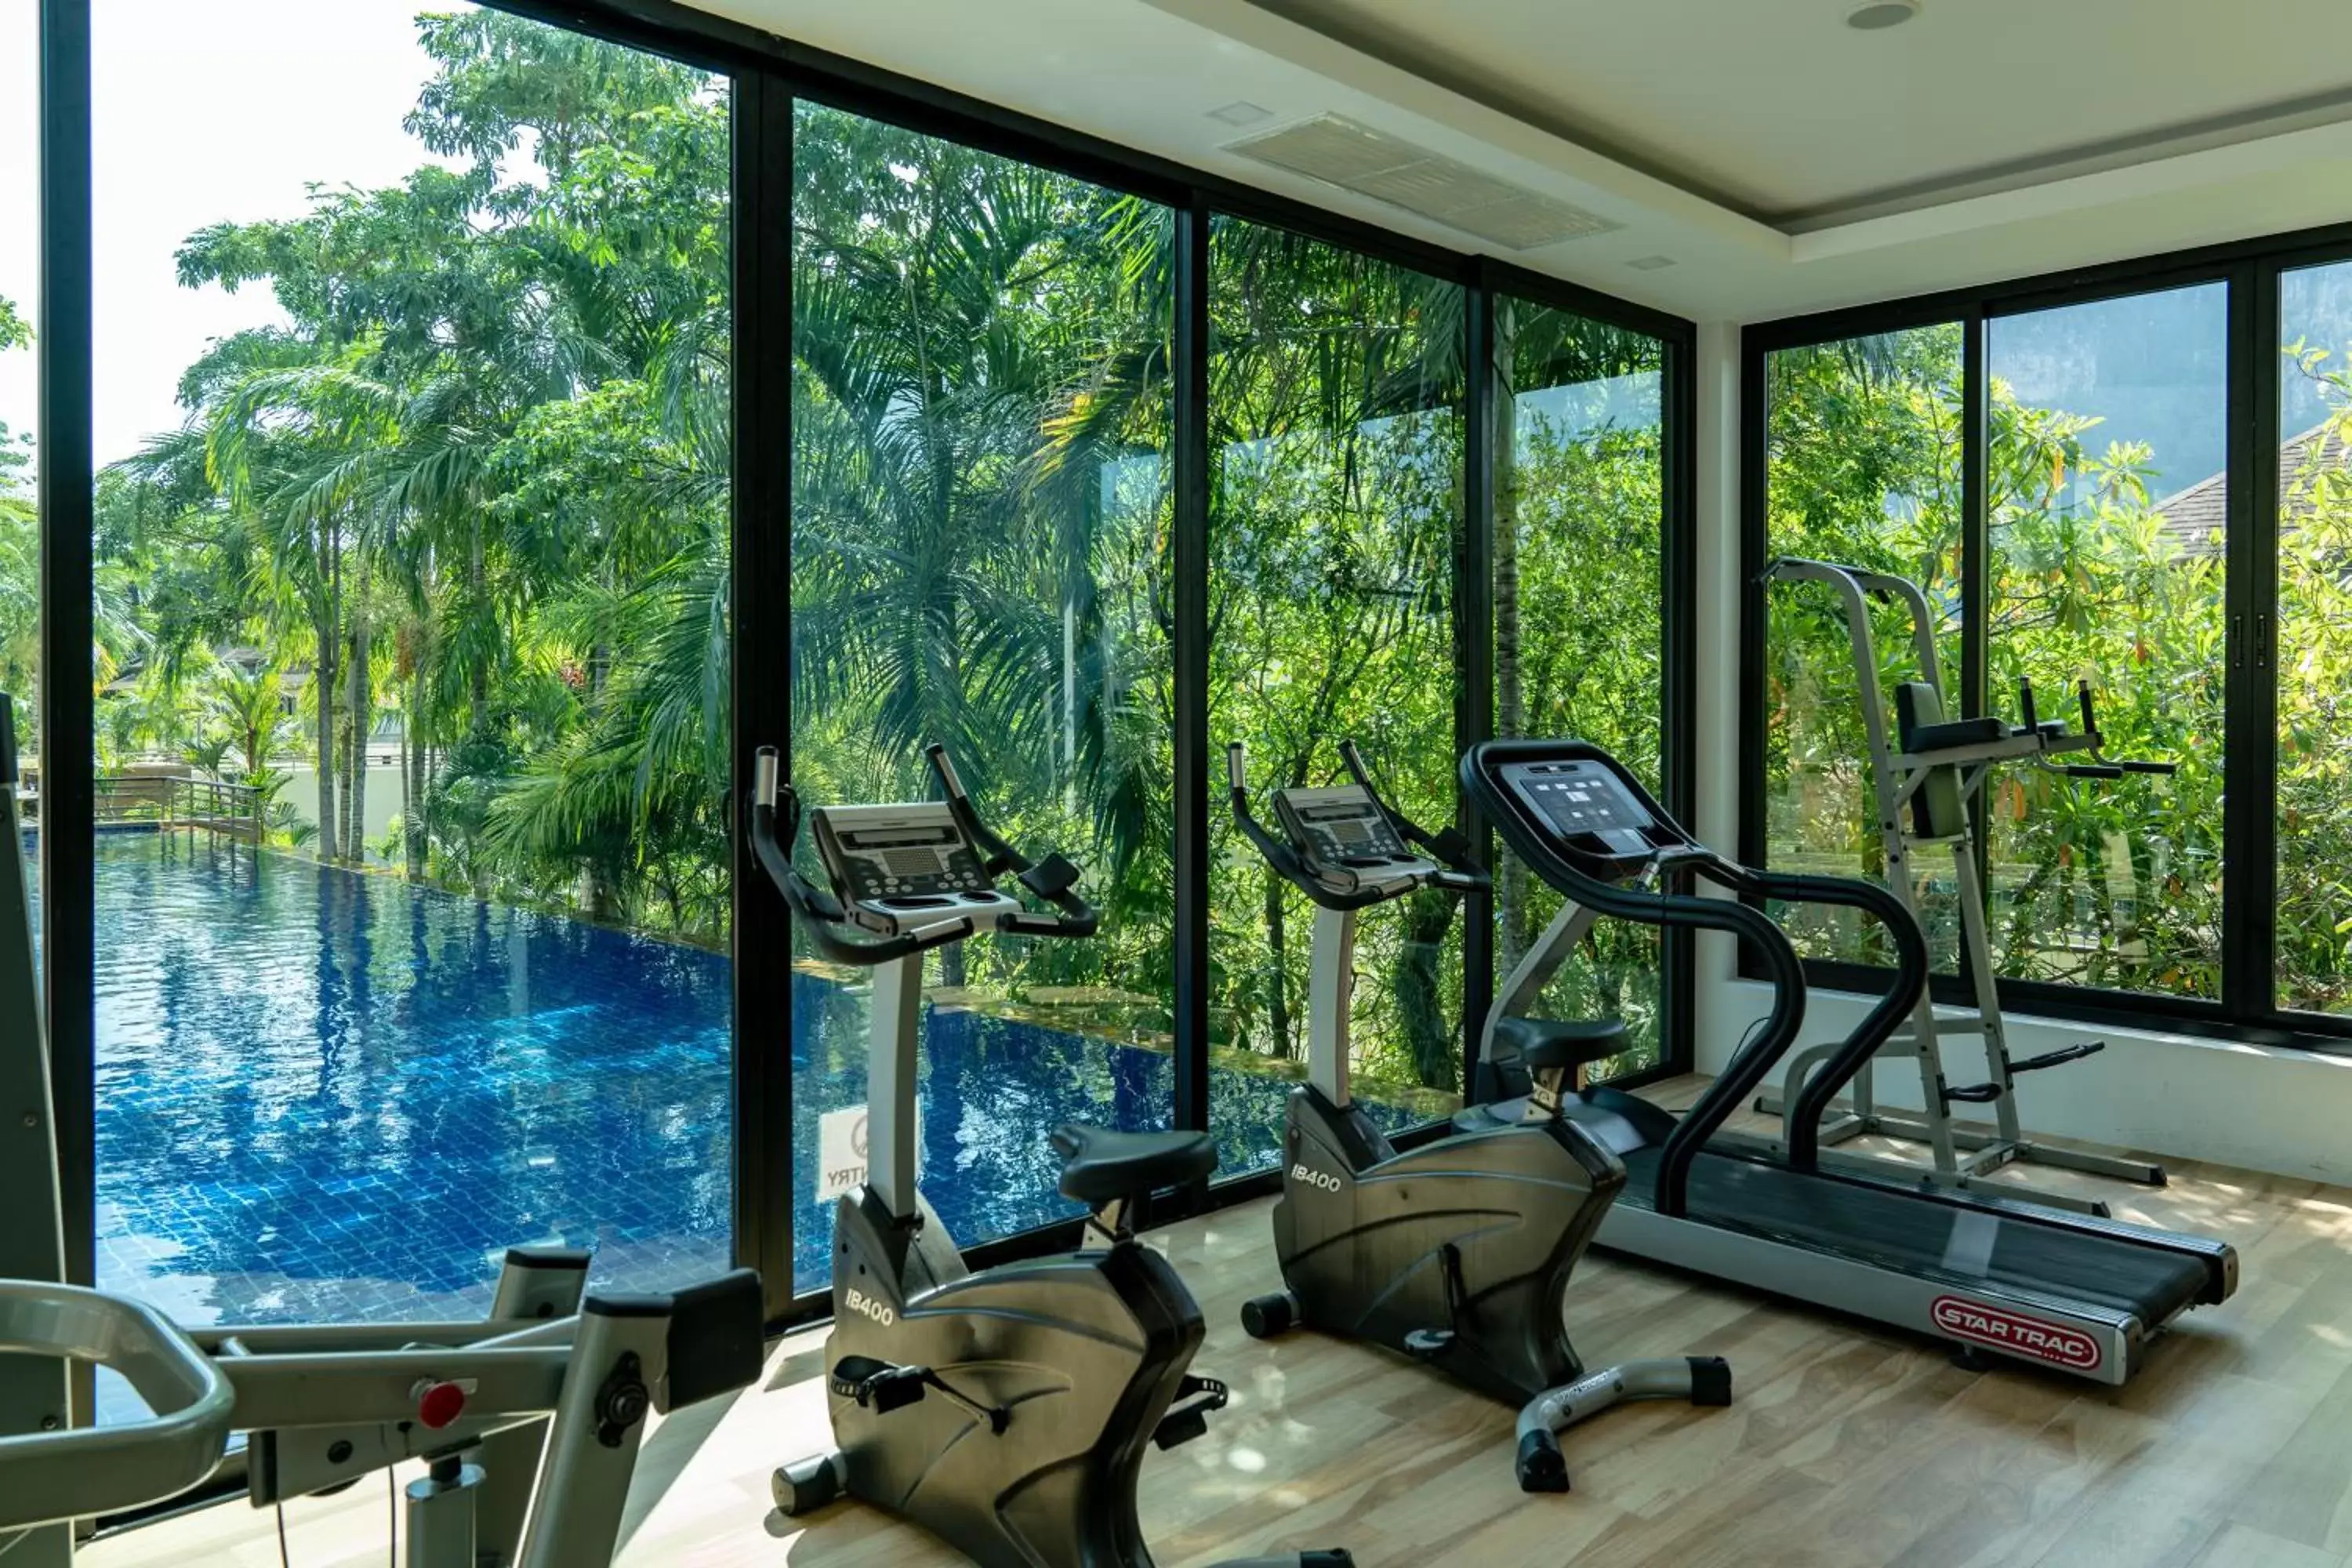 Fitness centre/facilities, Fitness Center/Facilities in Avani Ao Nang Cliff Krabi Resort